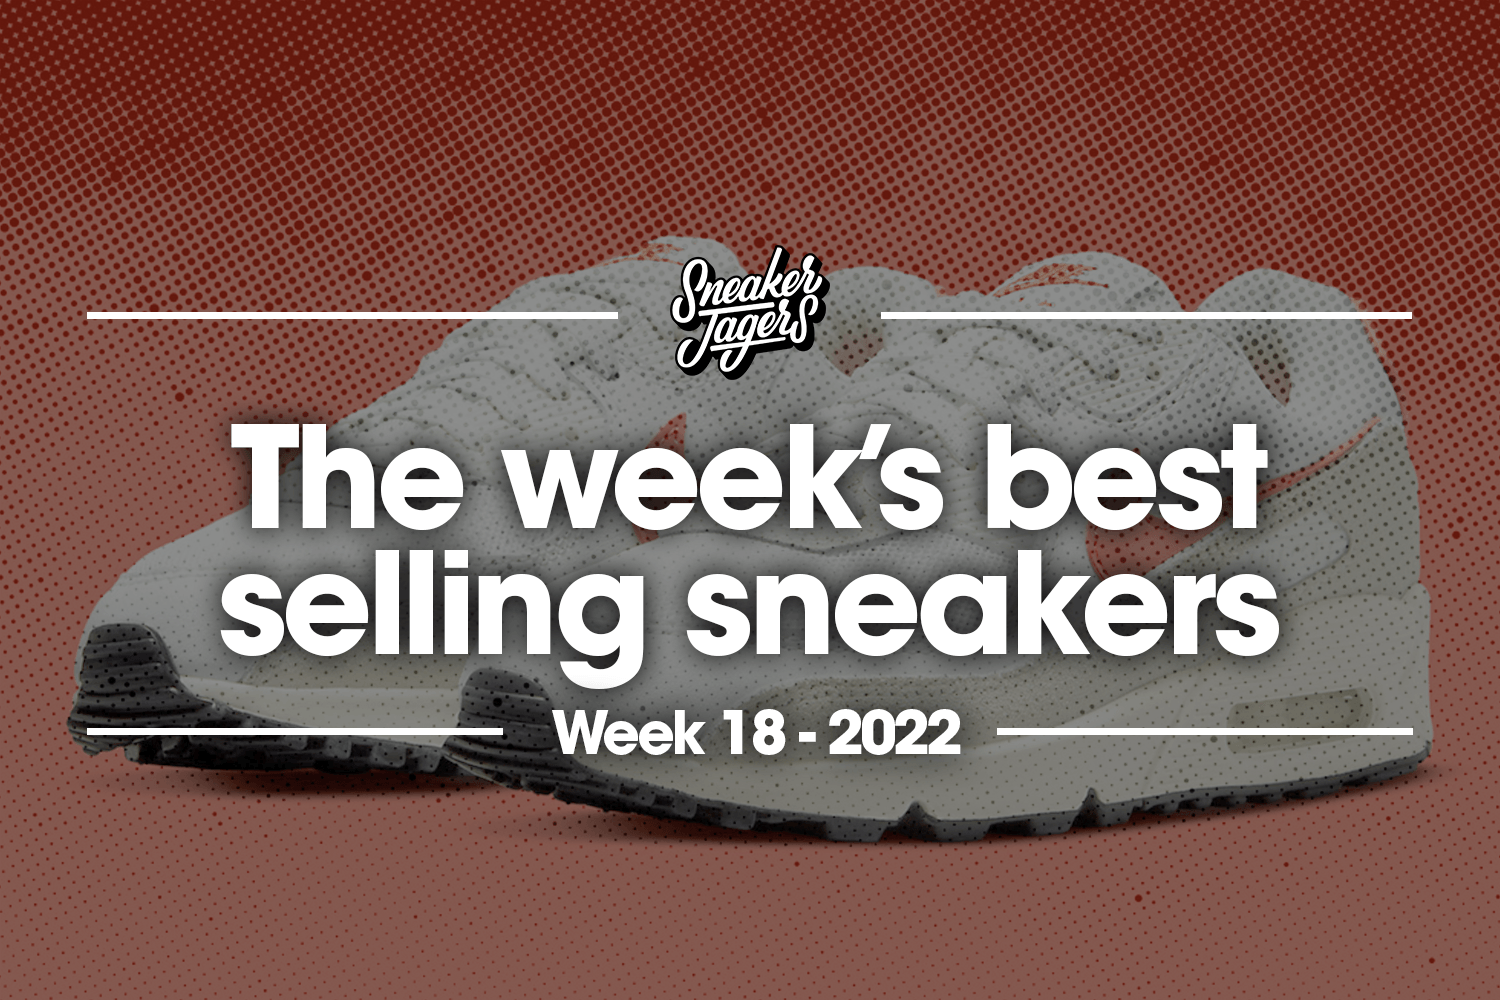 De 5 bestverkochte sneakers van week 18